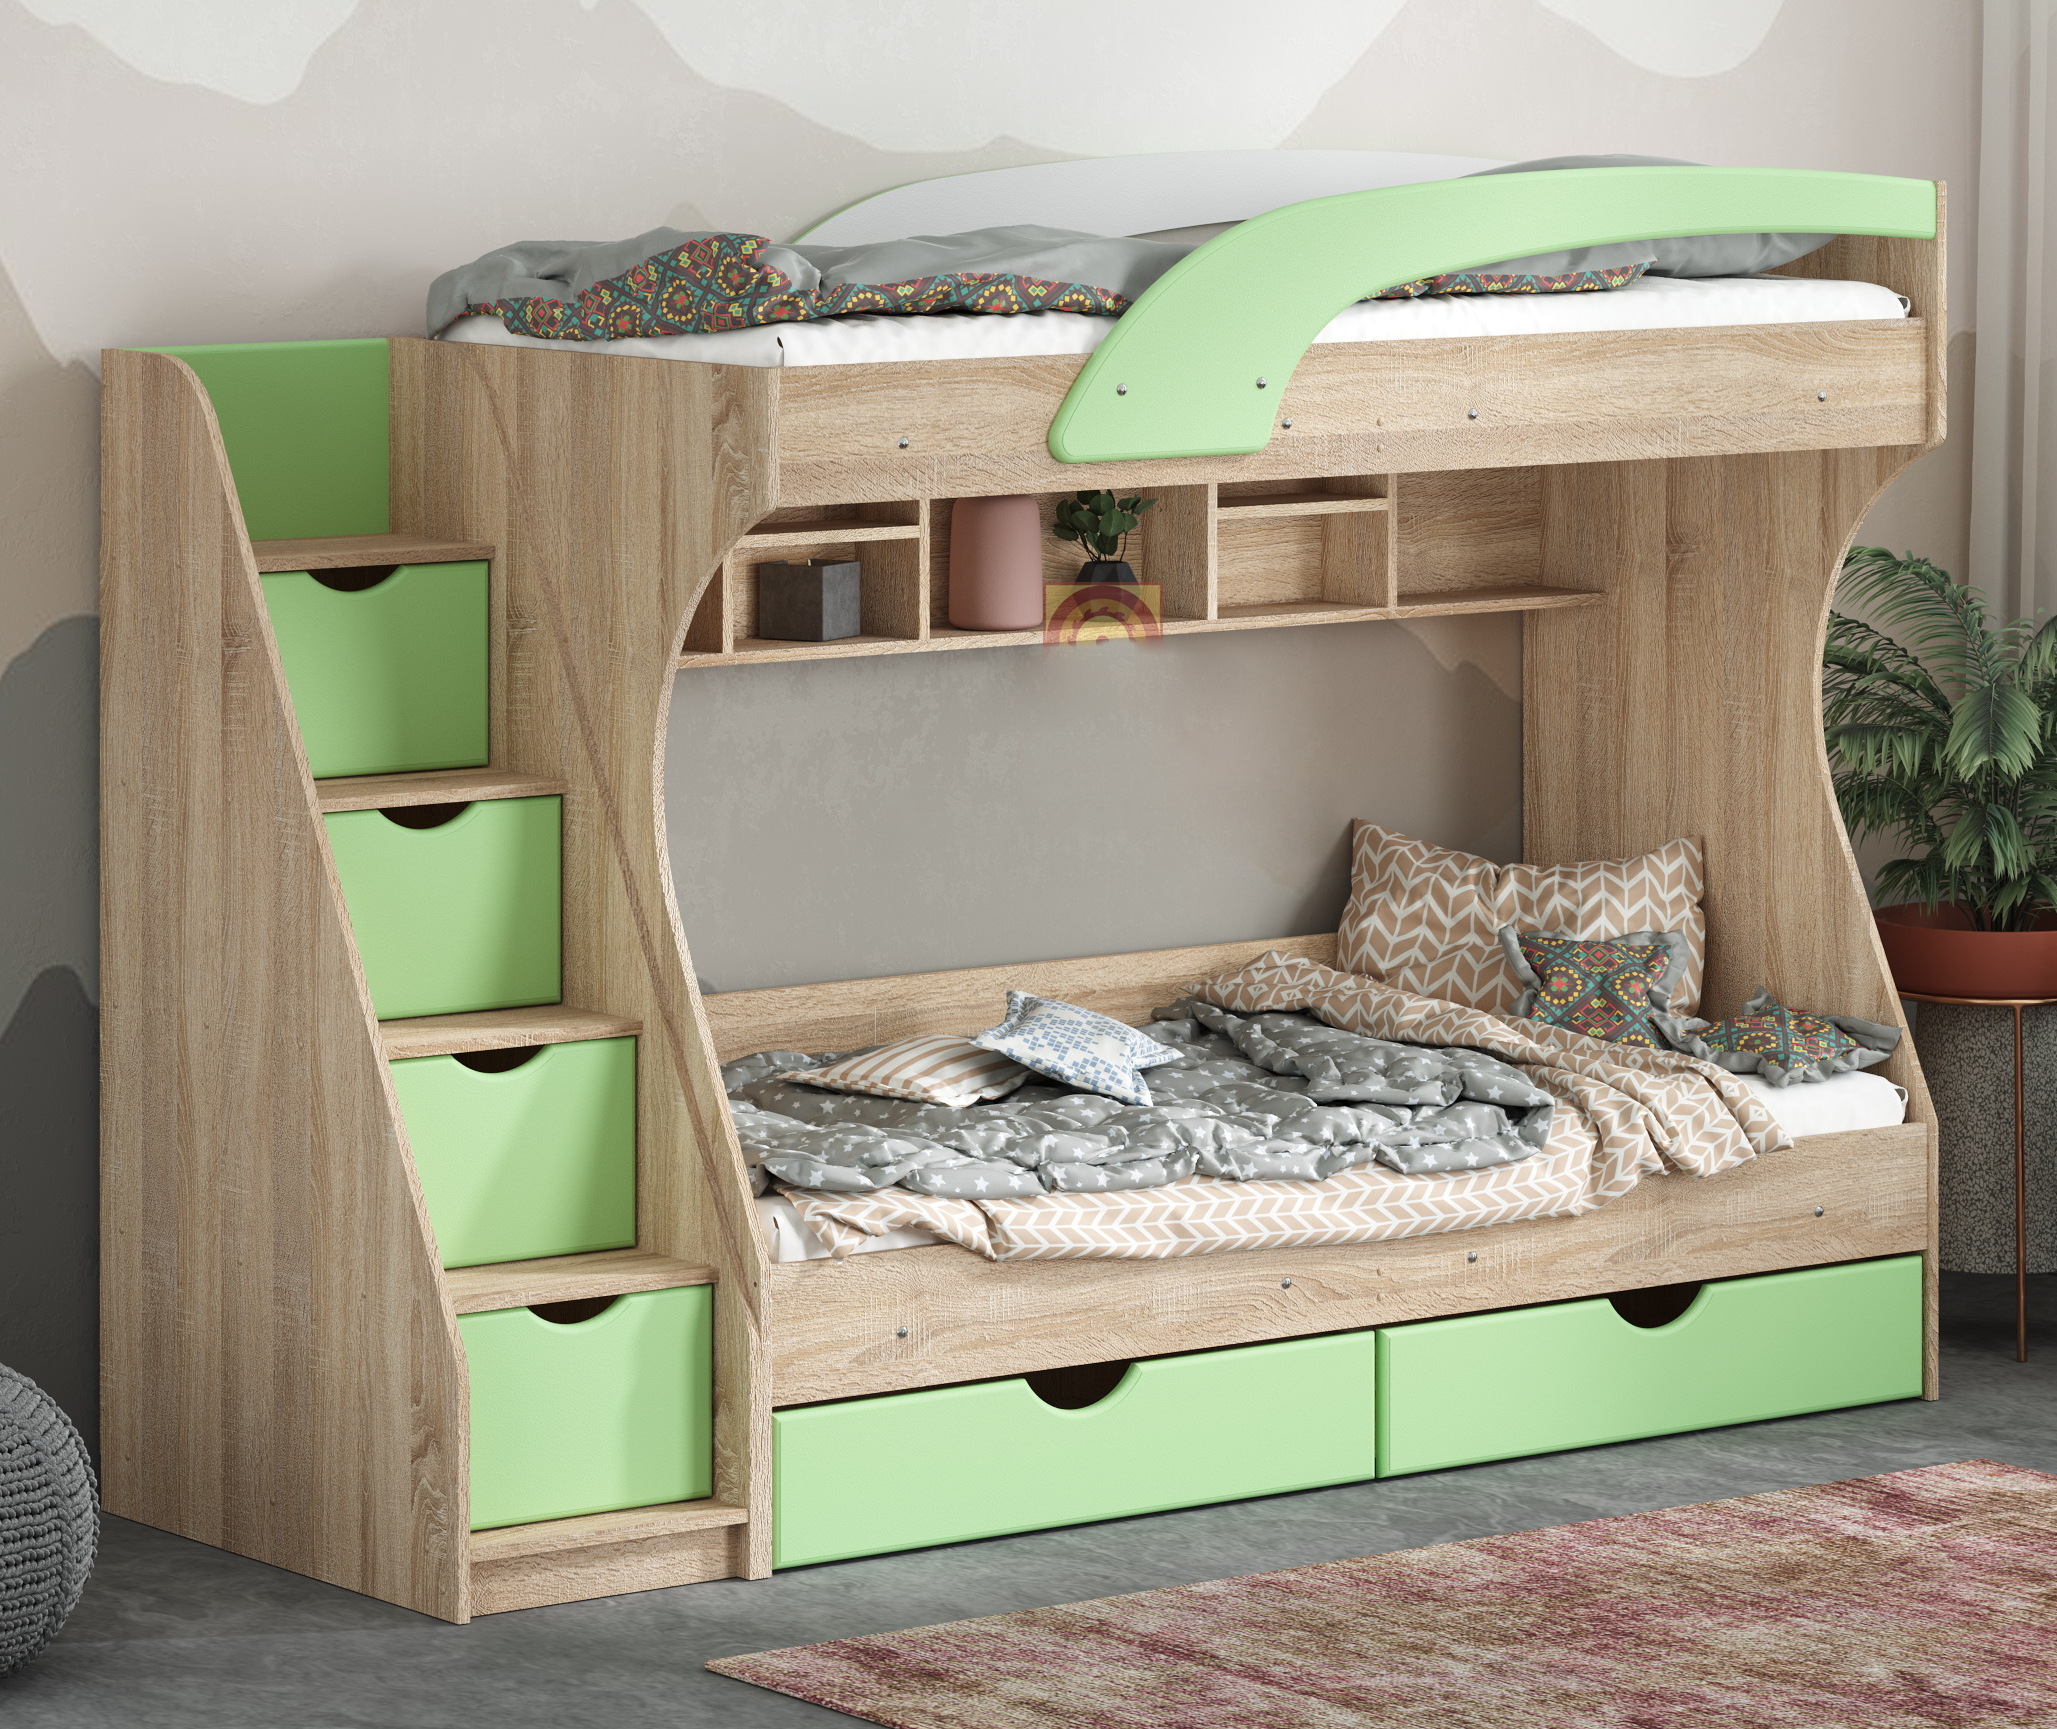 Двухъярусные кровати недорого. Двухърусная кровать из дерева. Mebel Green